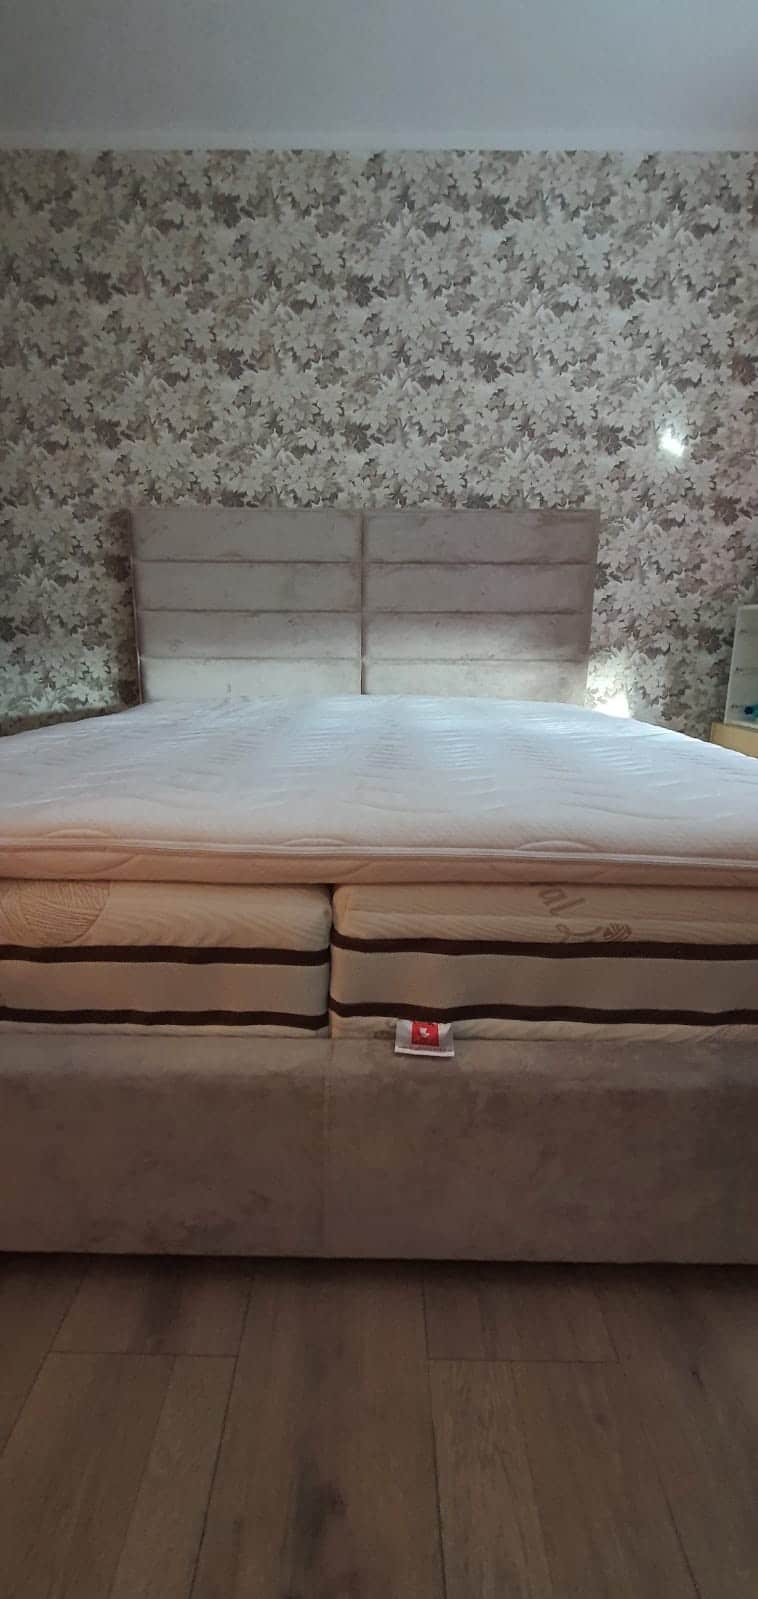 Posteľ Soft Quadro(180x200cm)s výškou čela 140cm v látke Neapol doplnená hotelovými matracmi na mieru podľa výberu zákazníka.